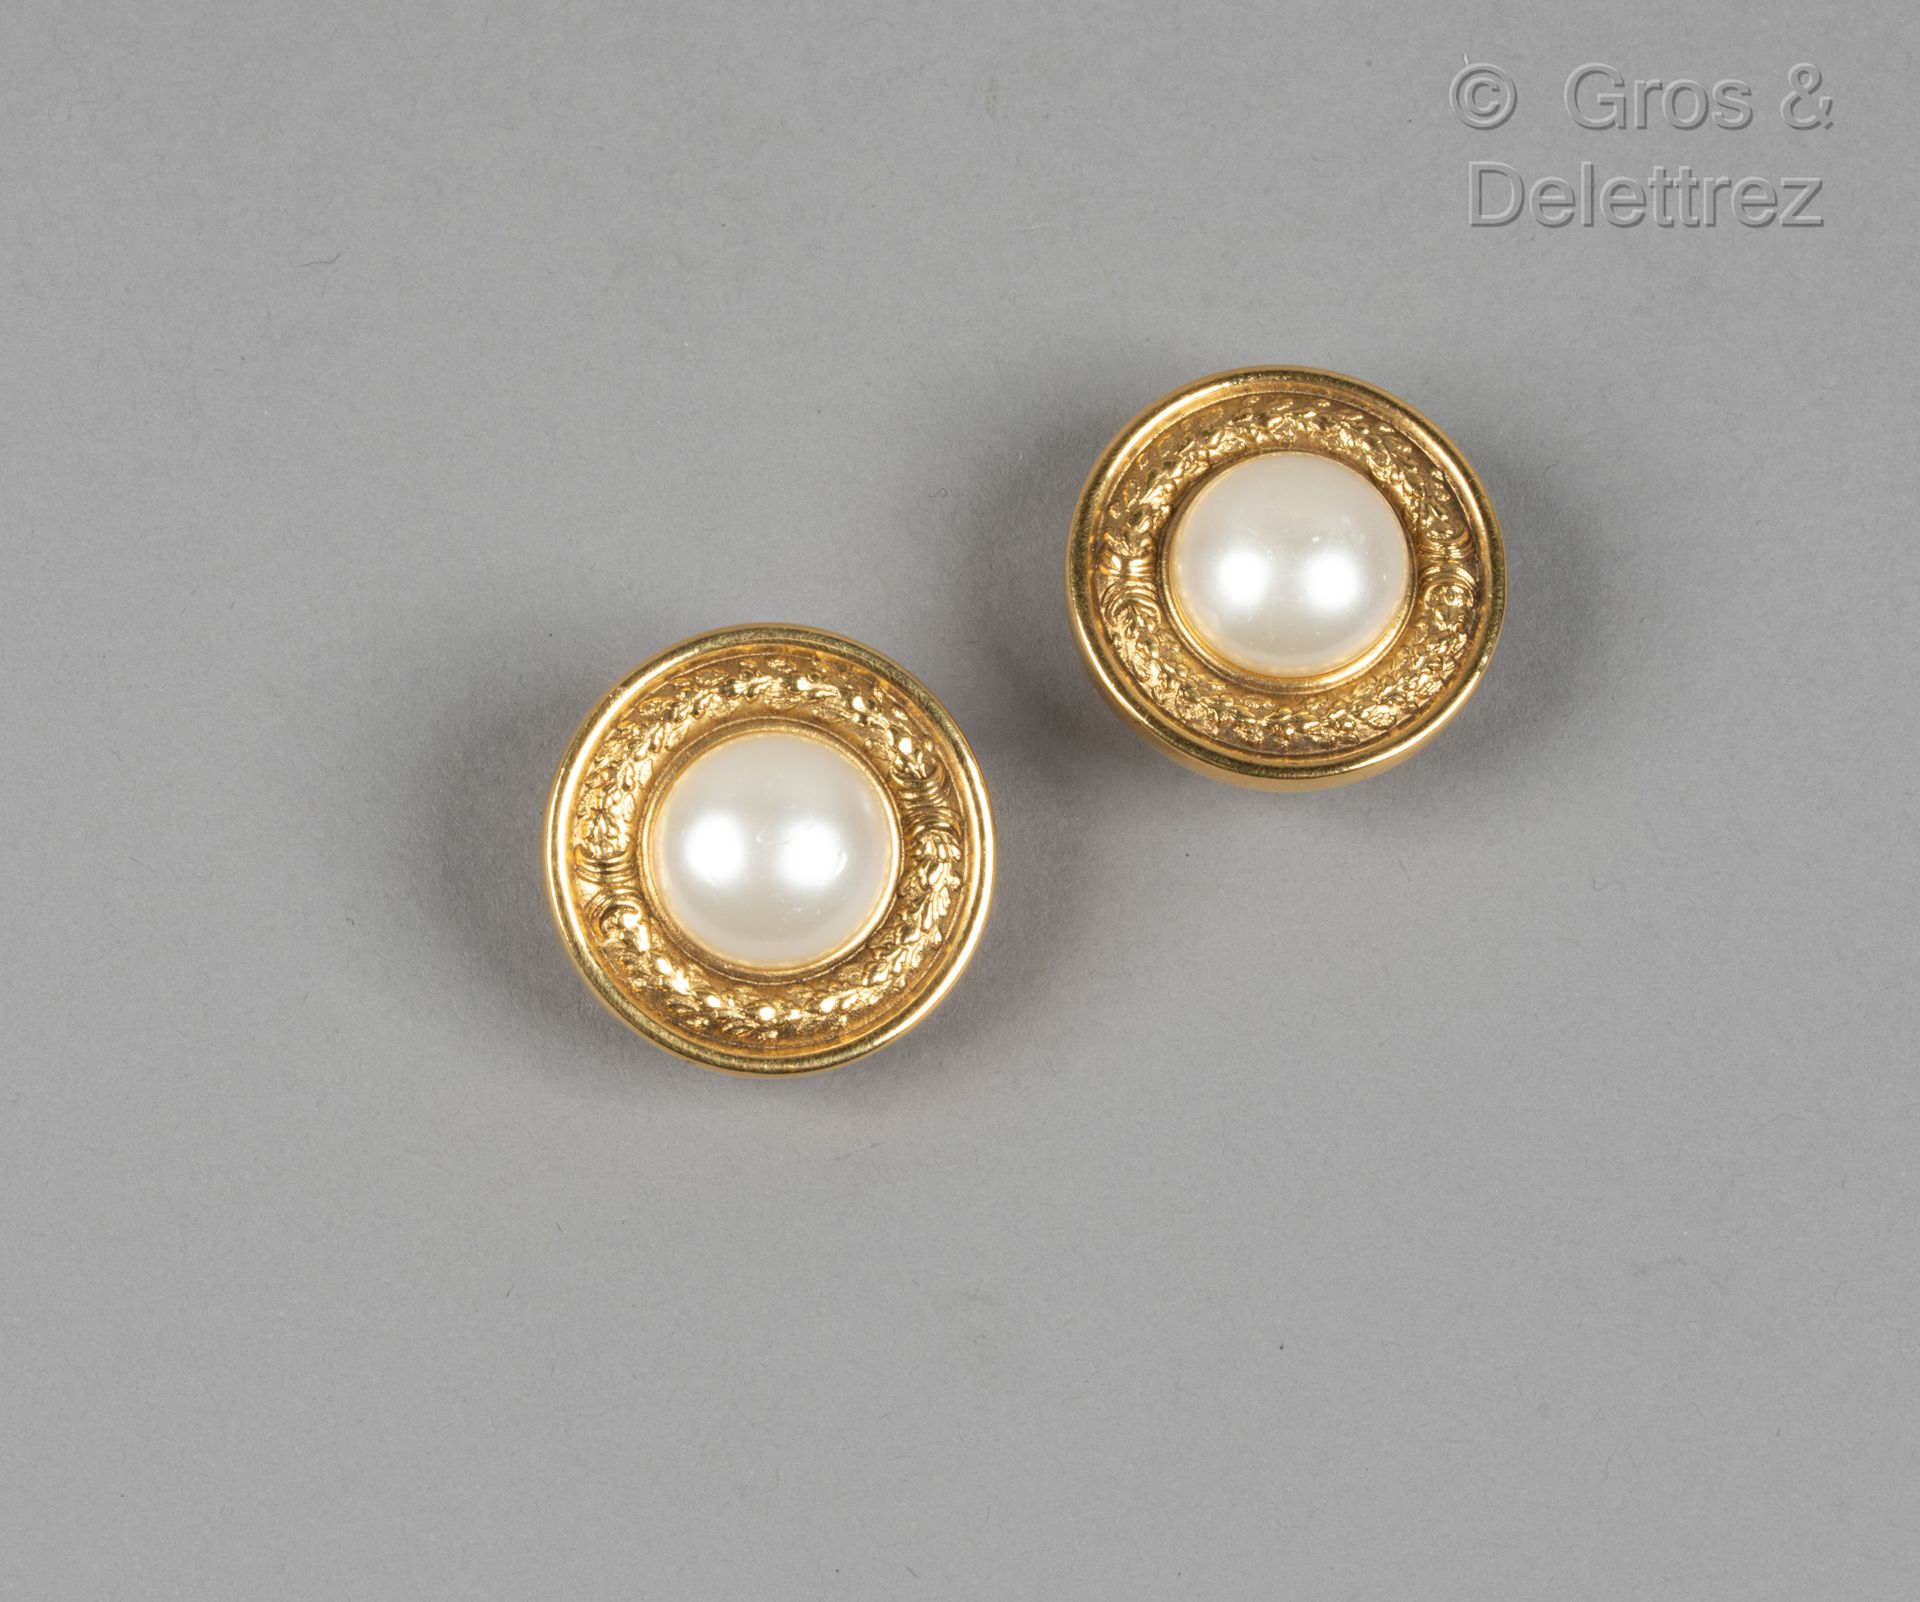 Null 卡尔-拉格斐的香奈儿

高级时装系列

约1990年

一对镀金金属圆形耳夹，刻有月桂花环图案，中间有一颗白色仿珍珠装饰。签名。直径：3厘米。